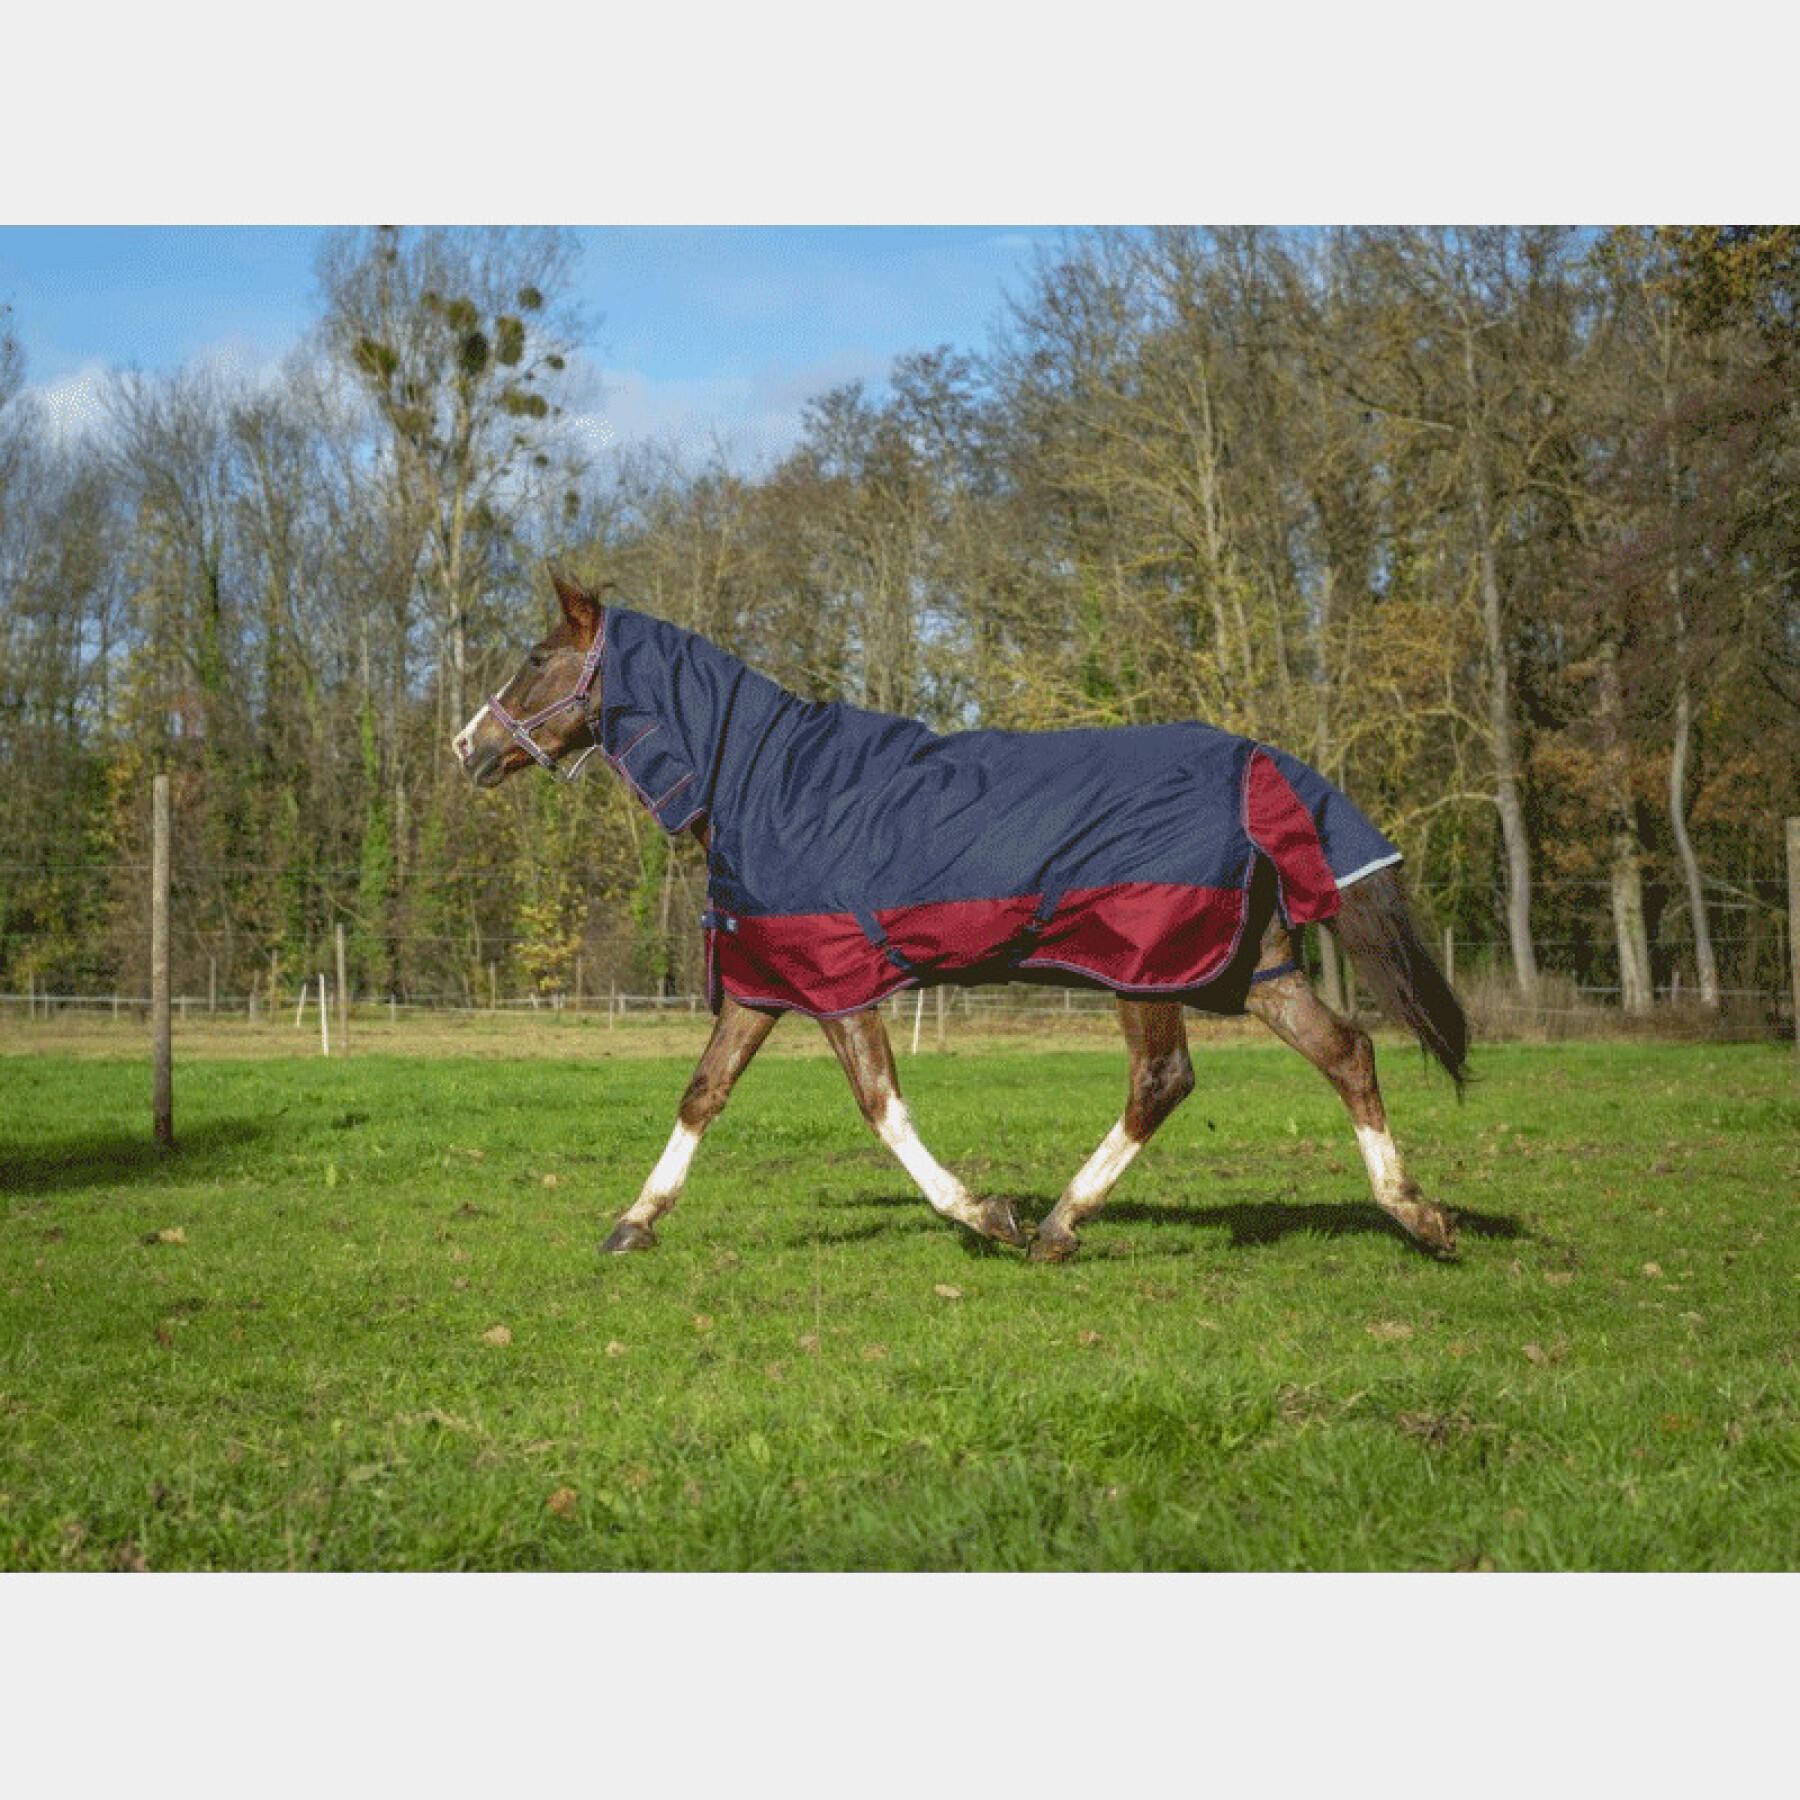 Outdoor horse blanket Equithème Tyrex 1200 D Combo 200g